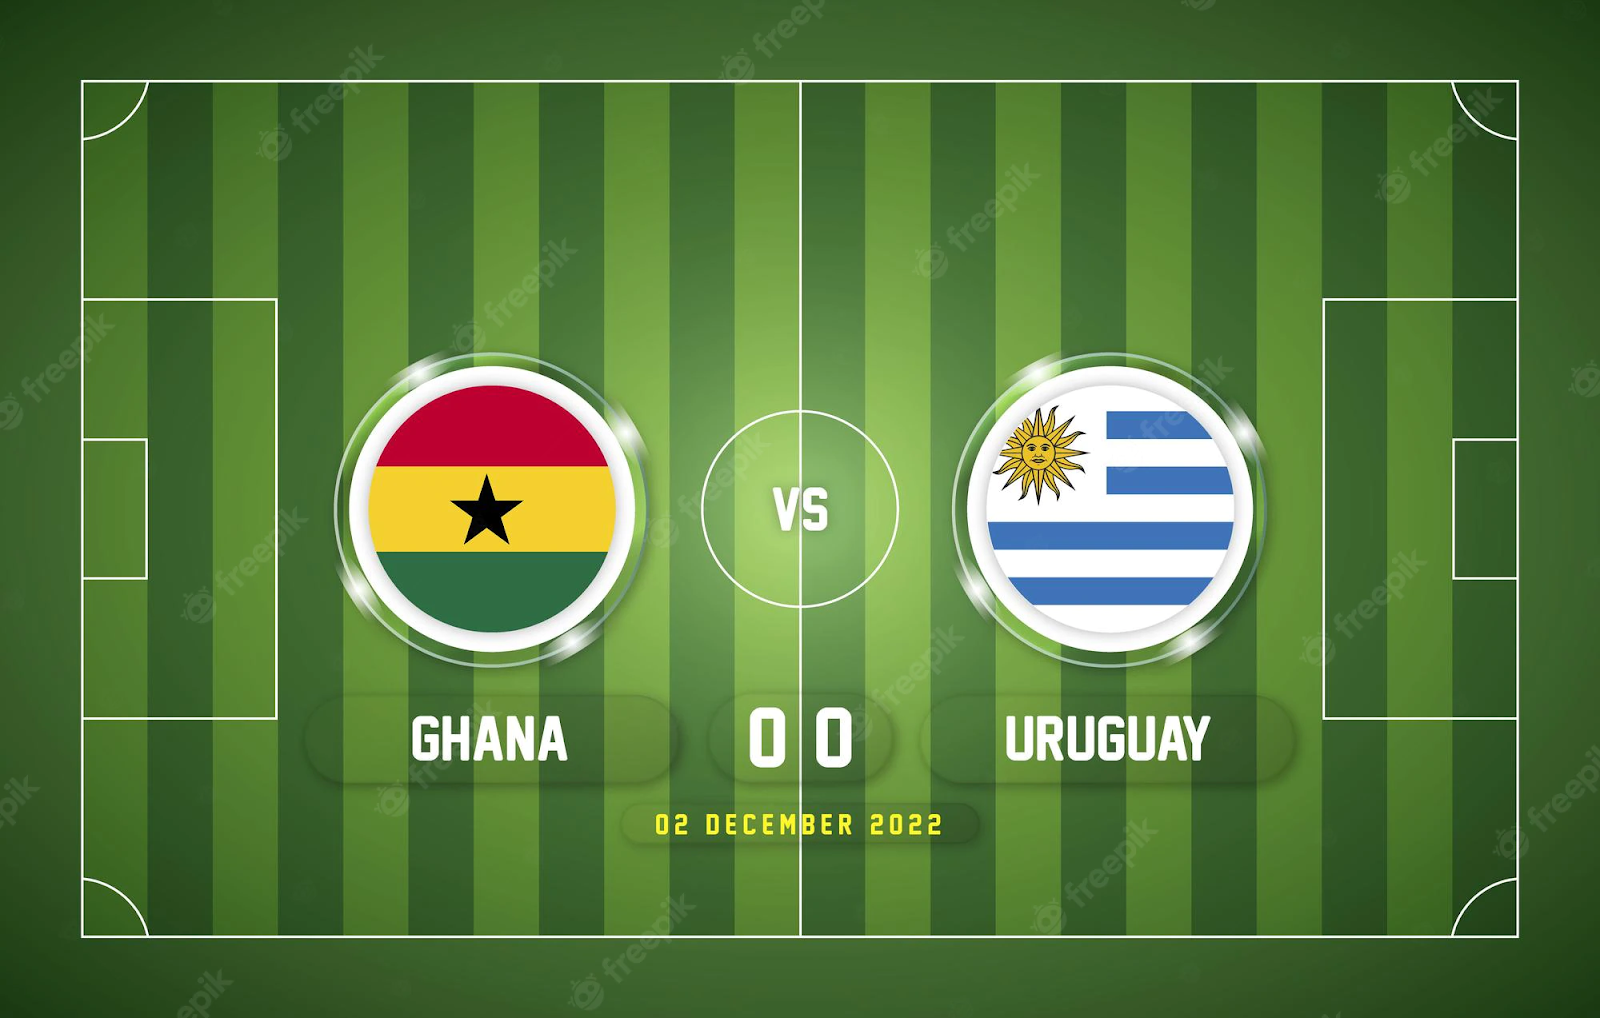 Giới thiệu về Ghana vs Uruguay